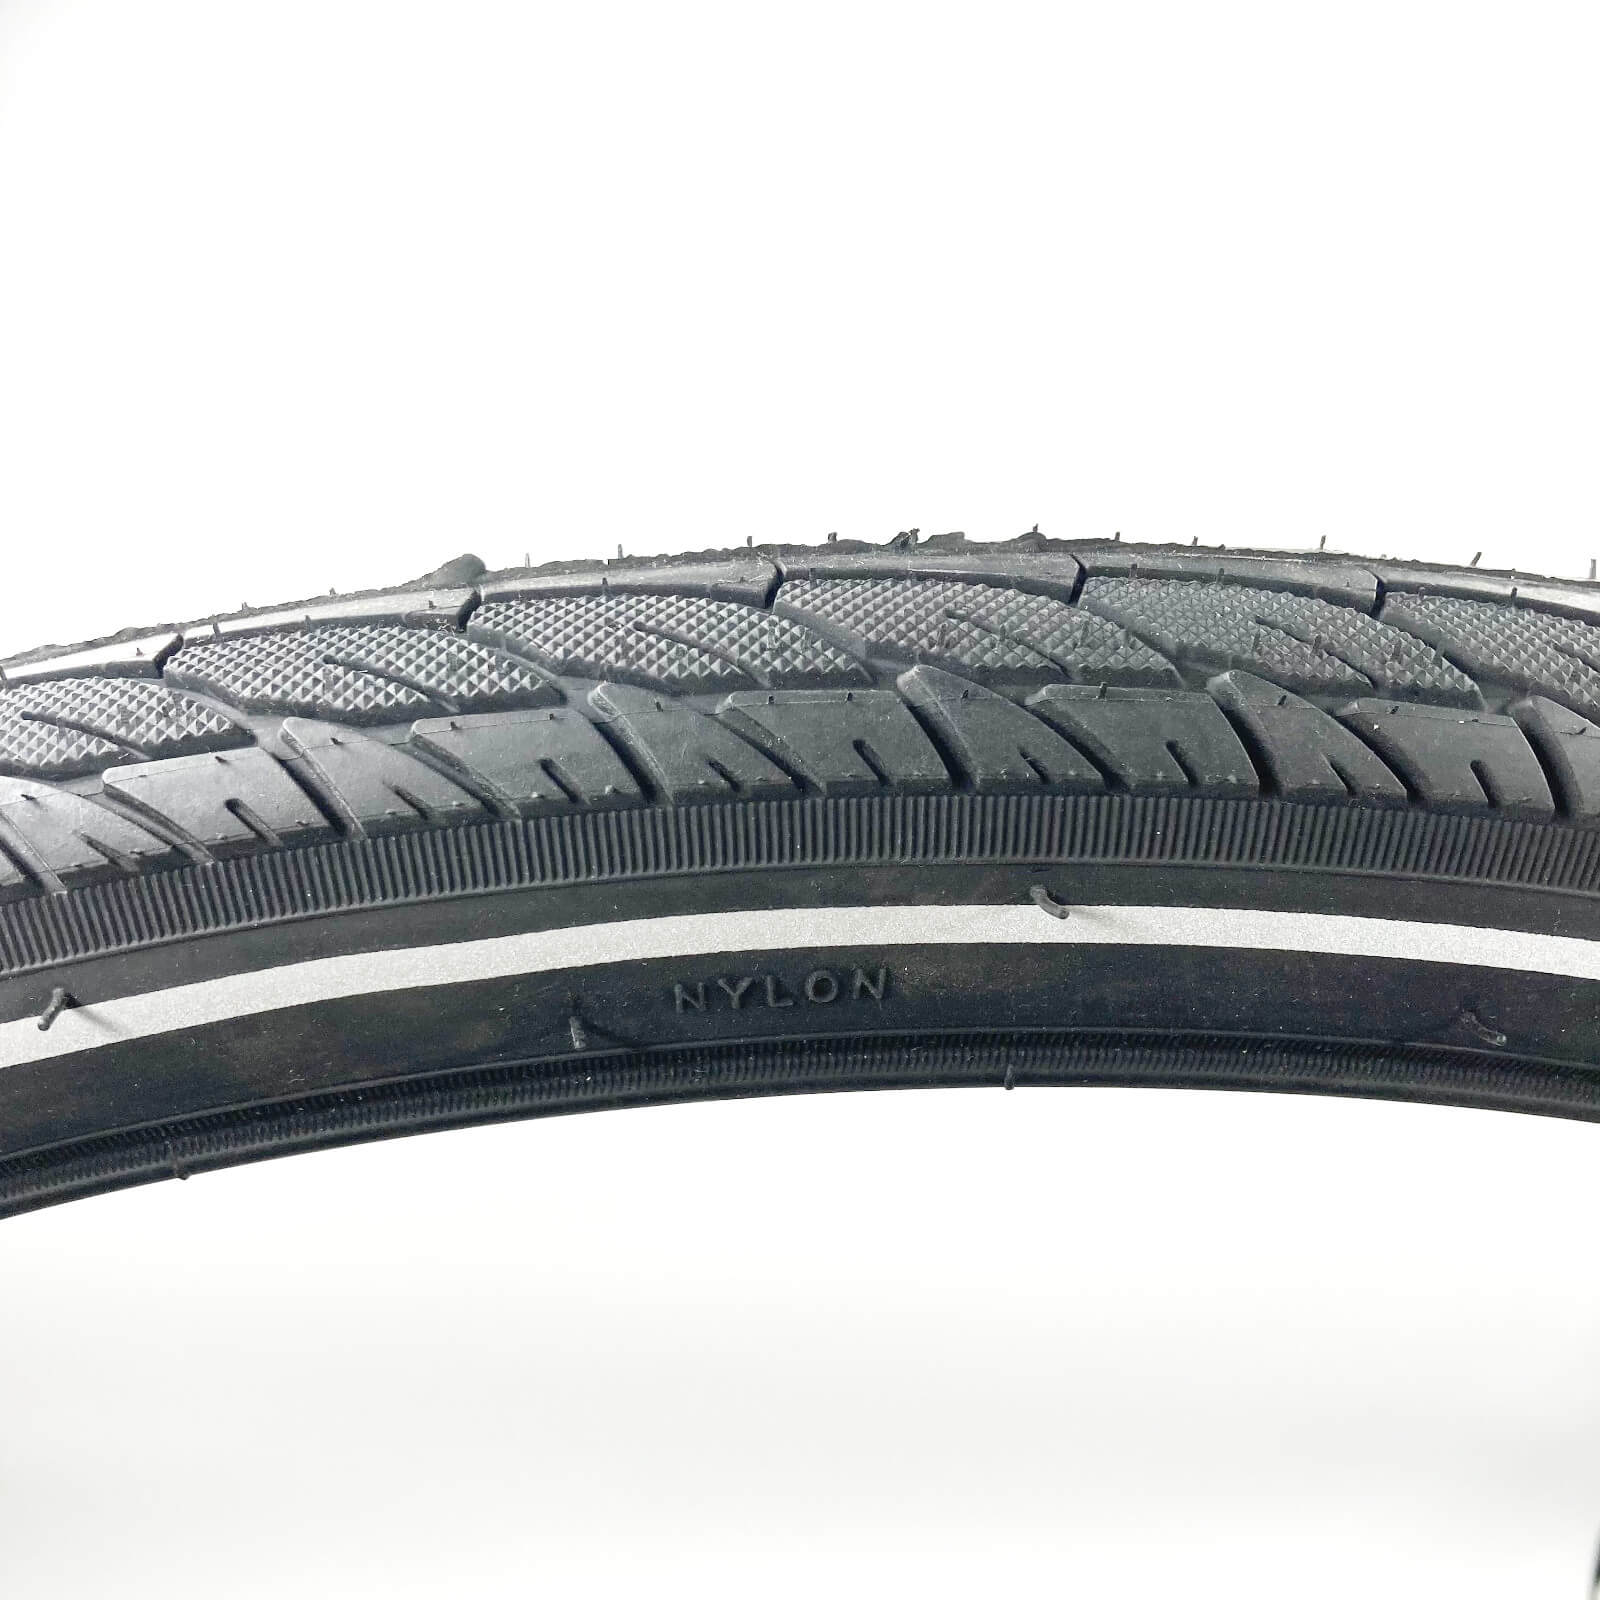 29 Inch Bike Tyre DSI Slick 29x1.95" Reflective Sidewall Pair of Tyres Schrader Tubes Alternate 4